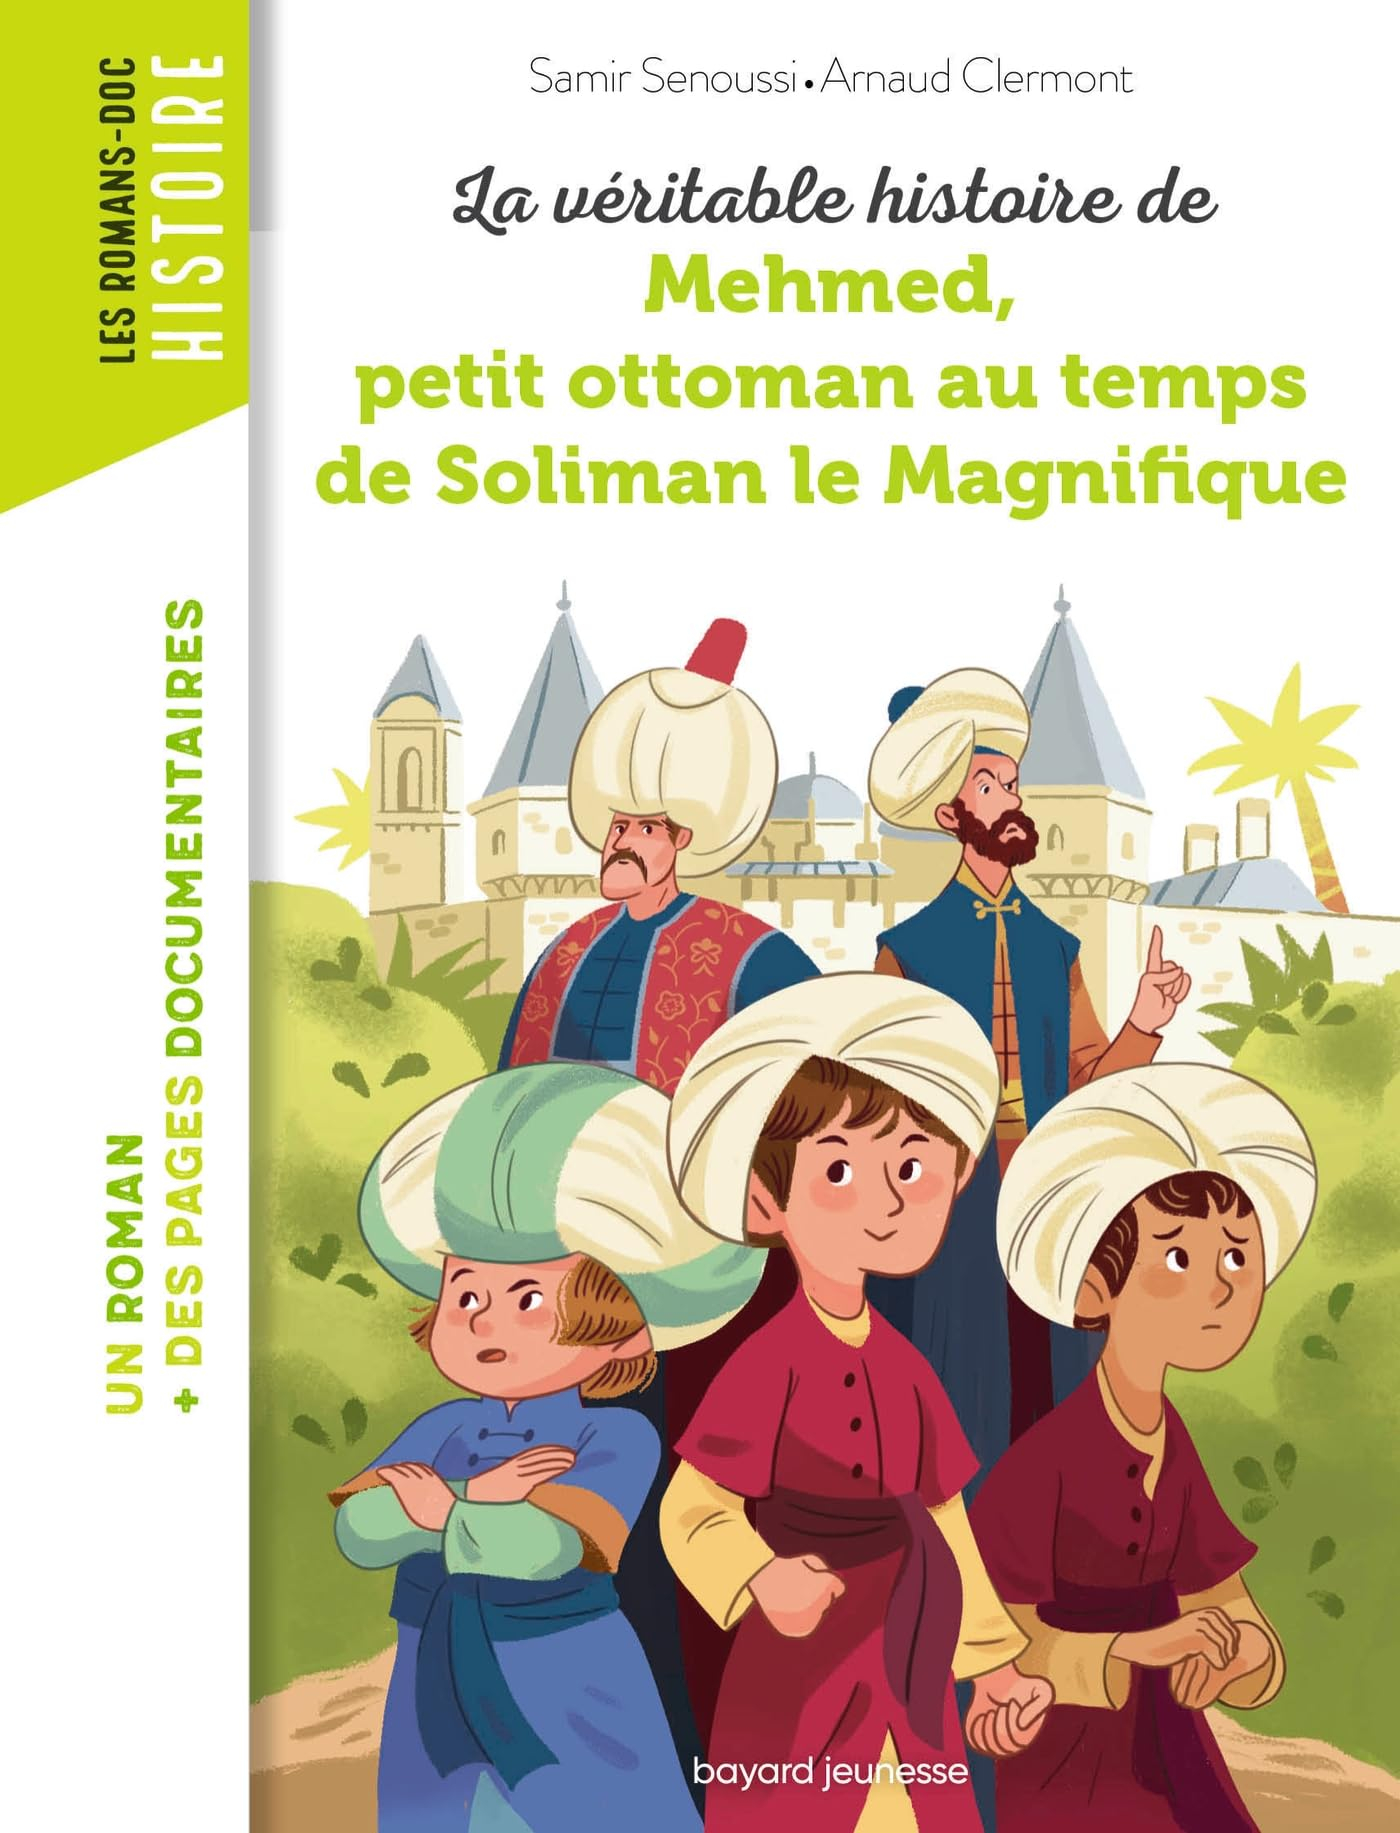 La véritable histoire de Mehmed, petit ottoman au temps de Soliman le Magnifique